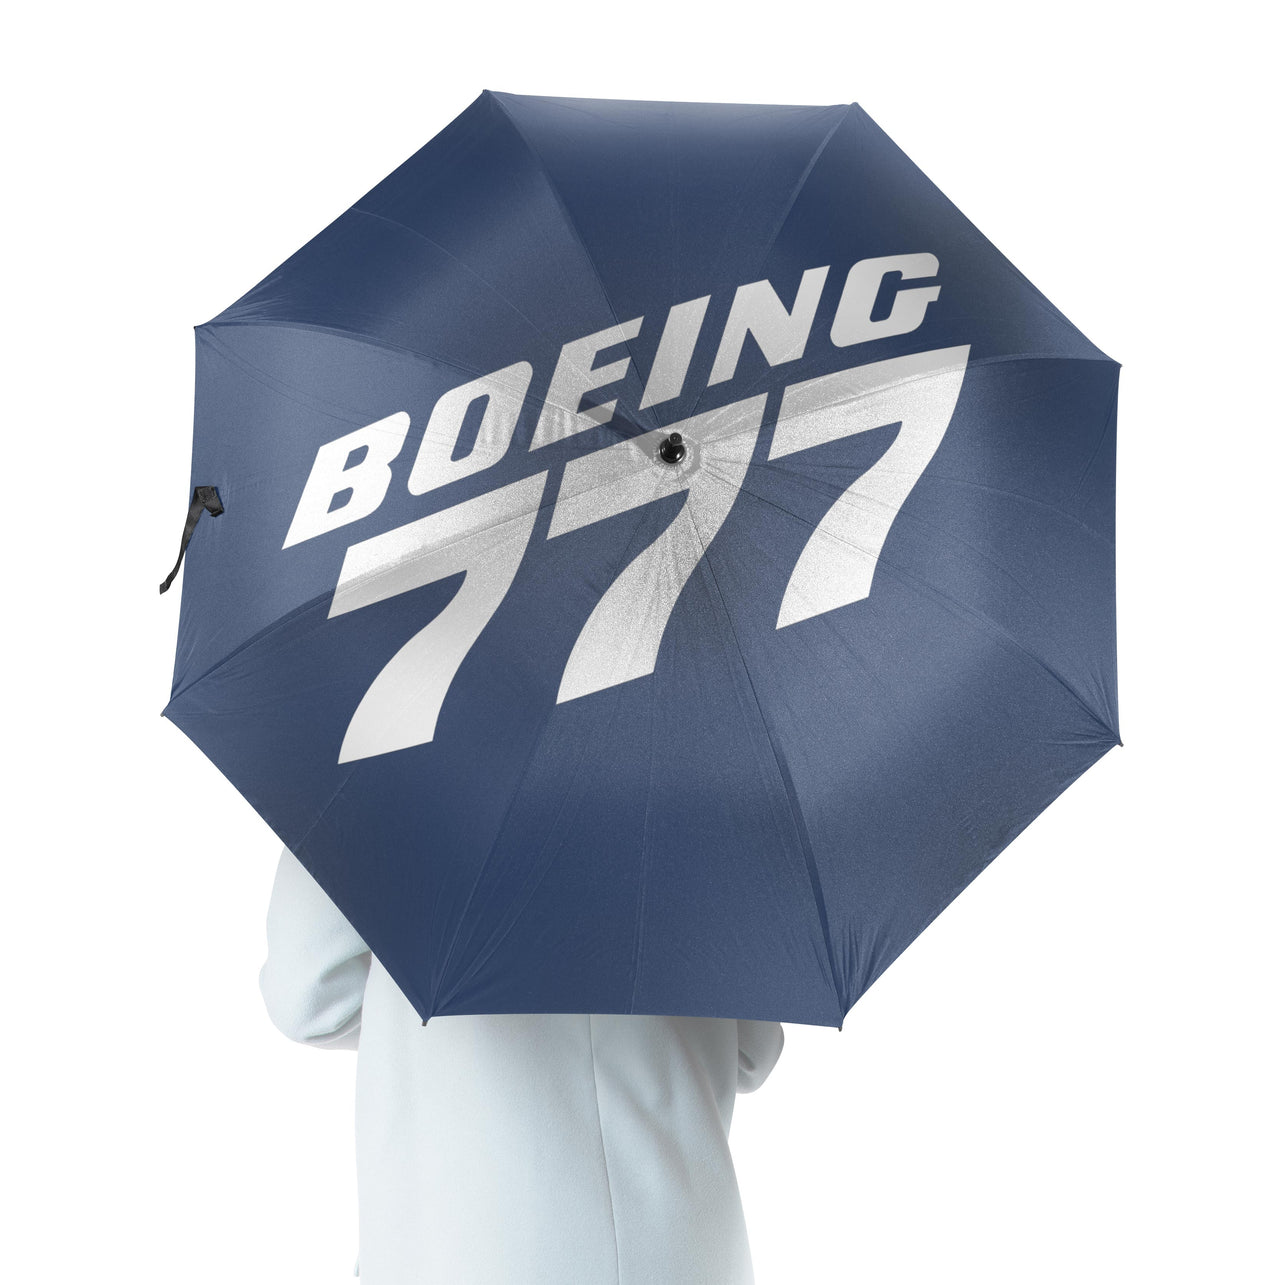 Boeing 777 & Text Designed Umbrella